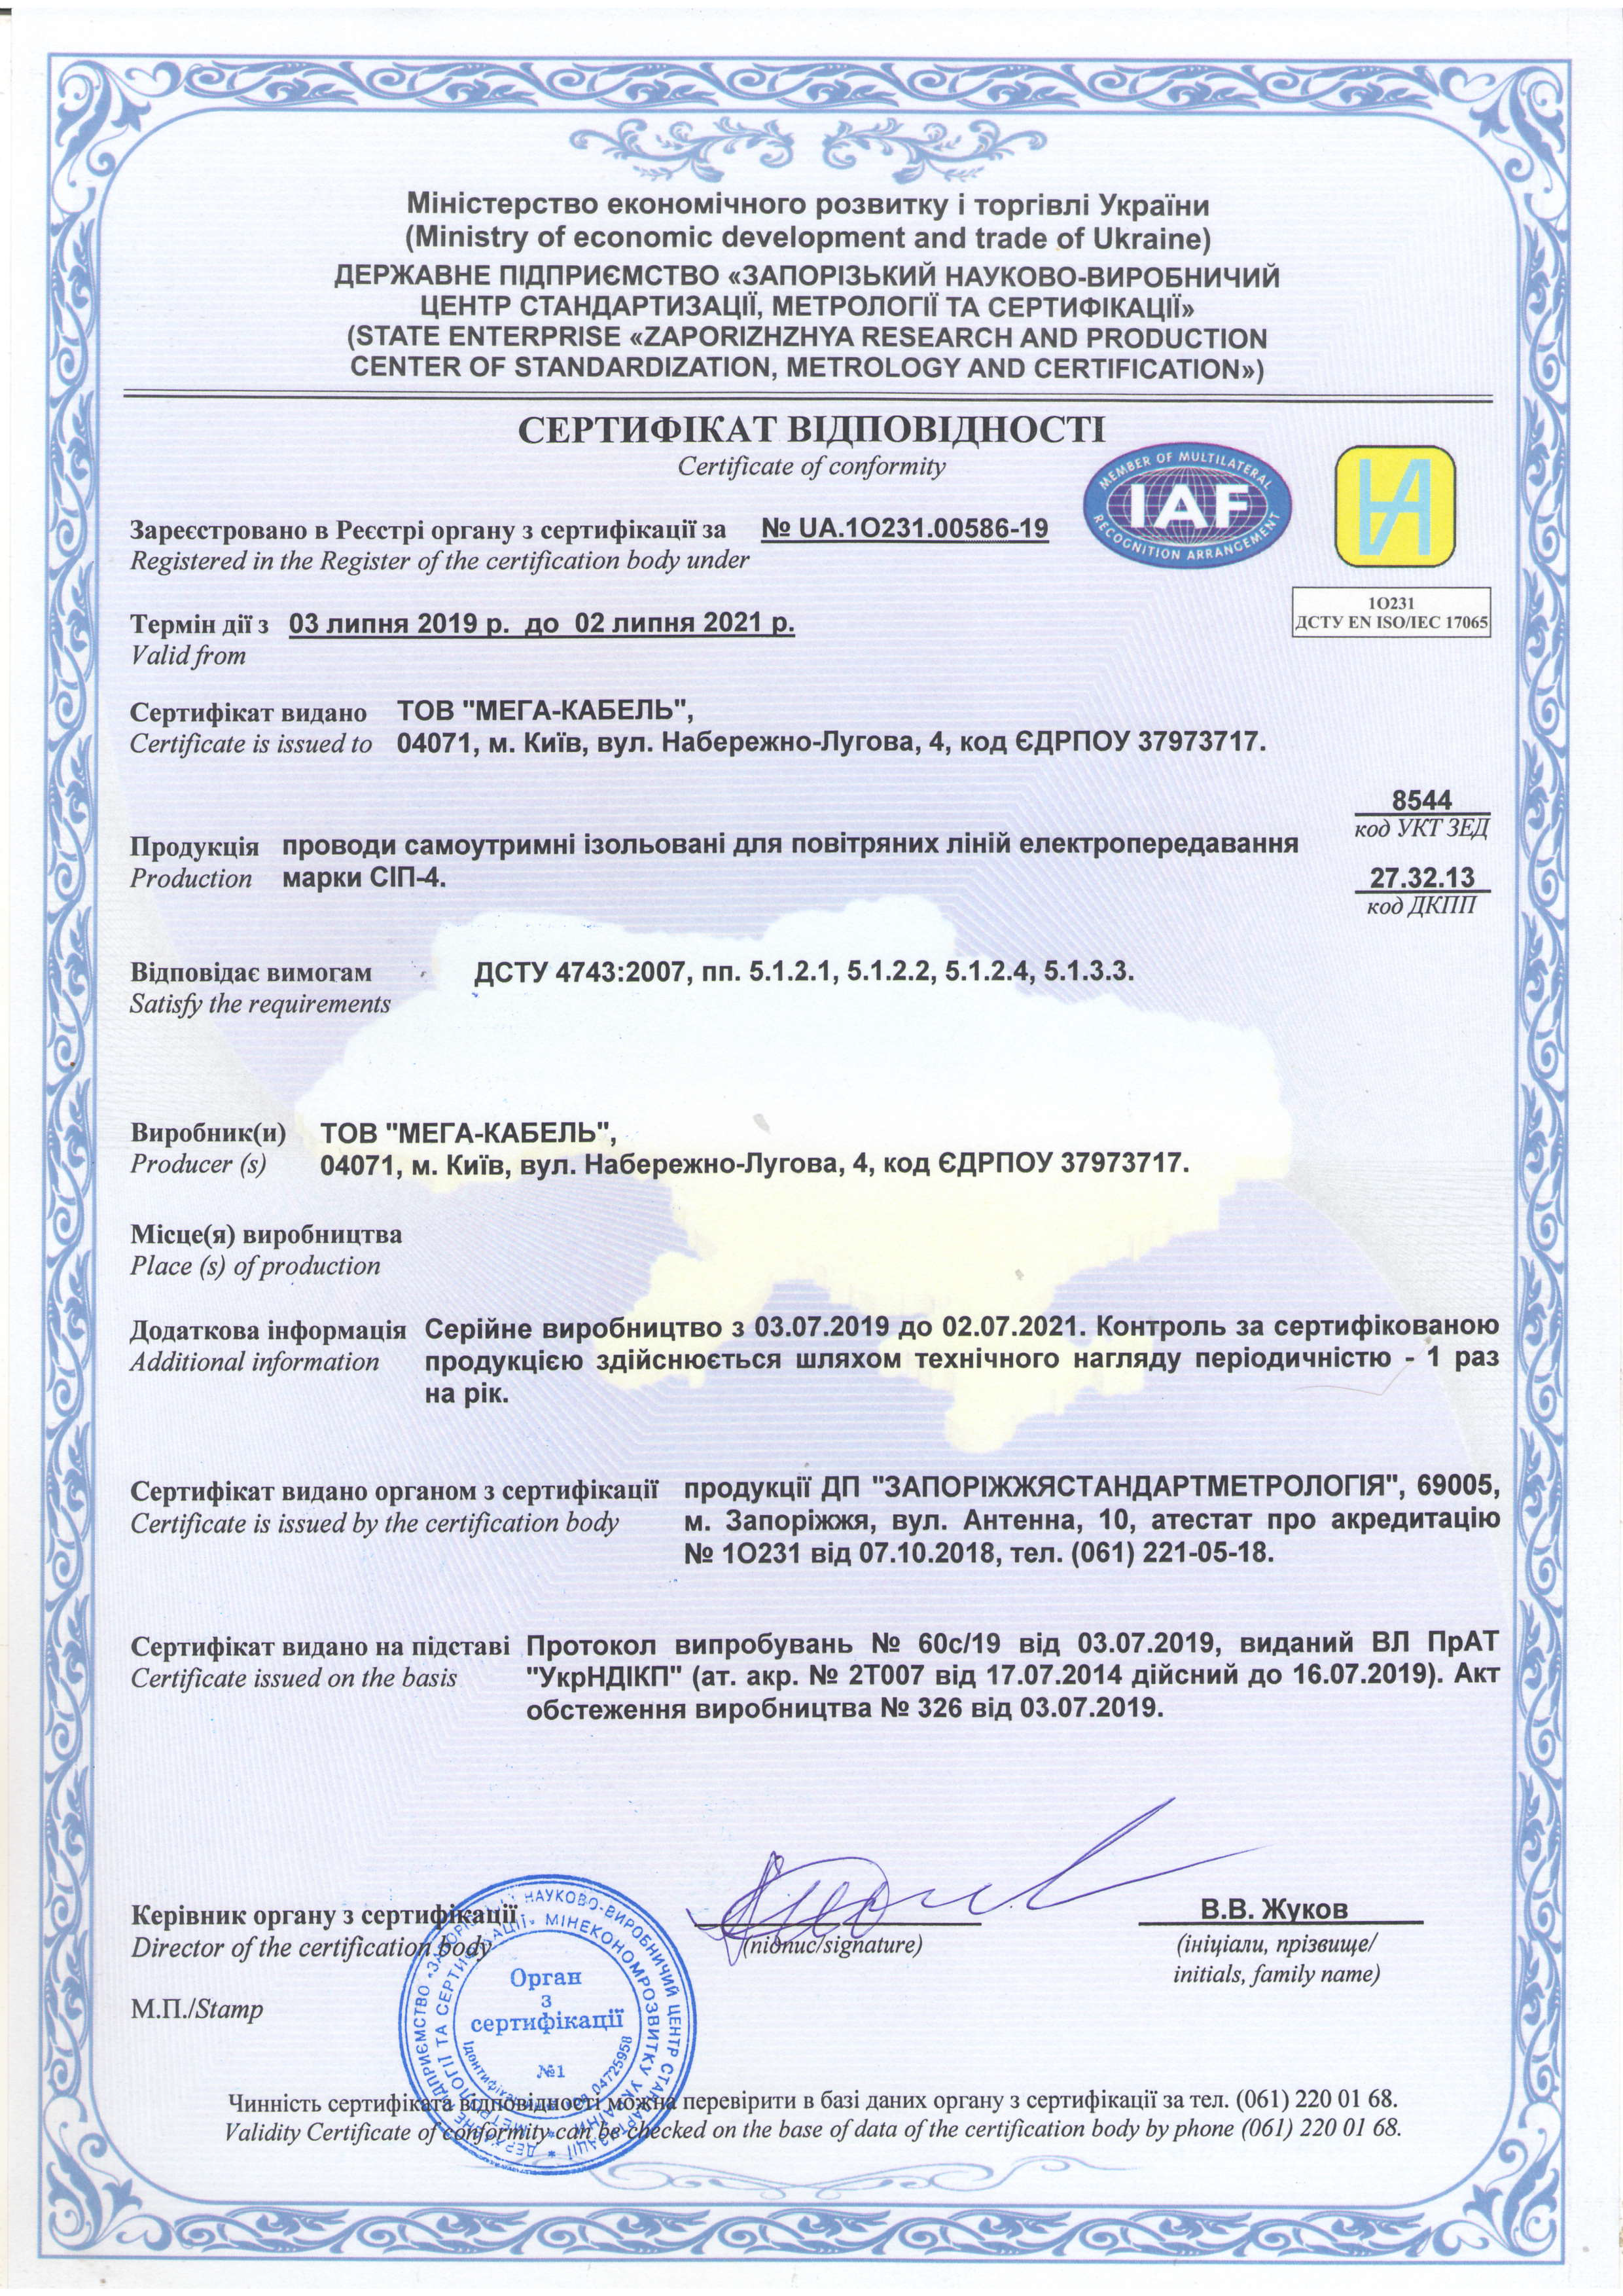 Провод ПВ 1 сертификат соответствия